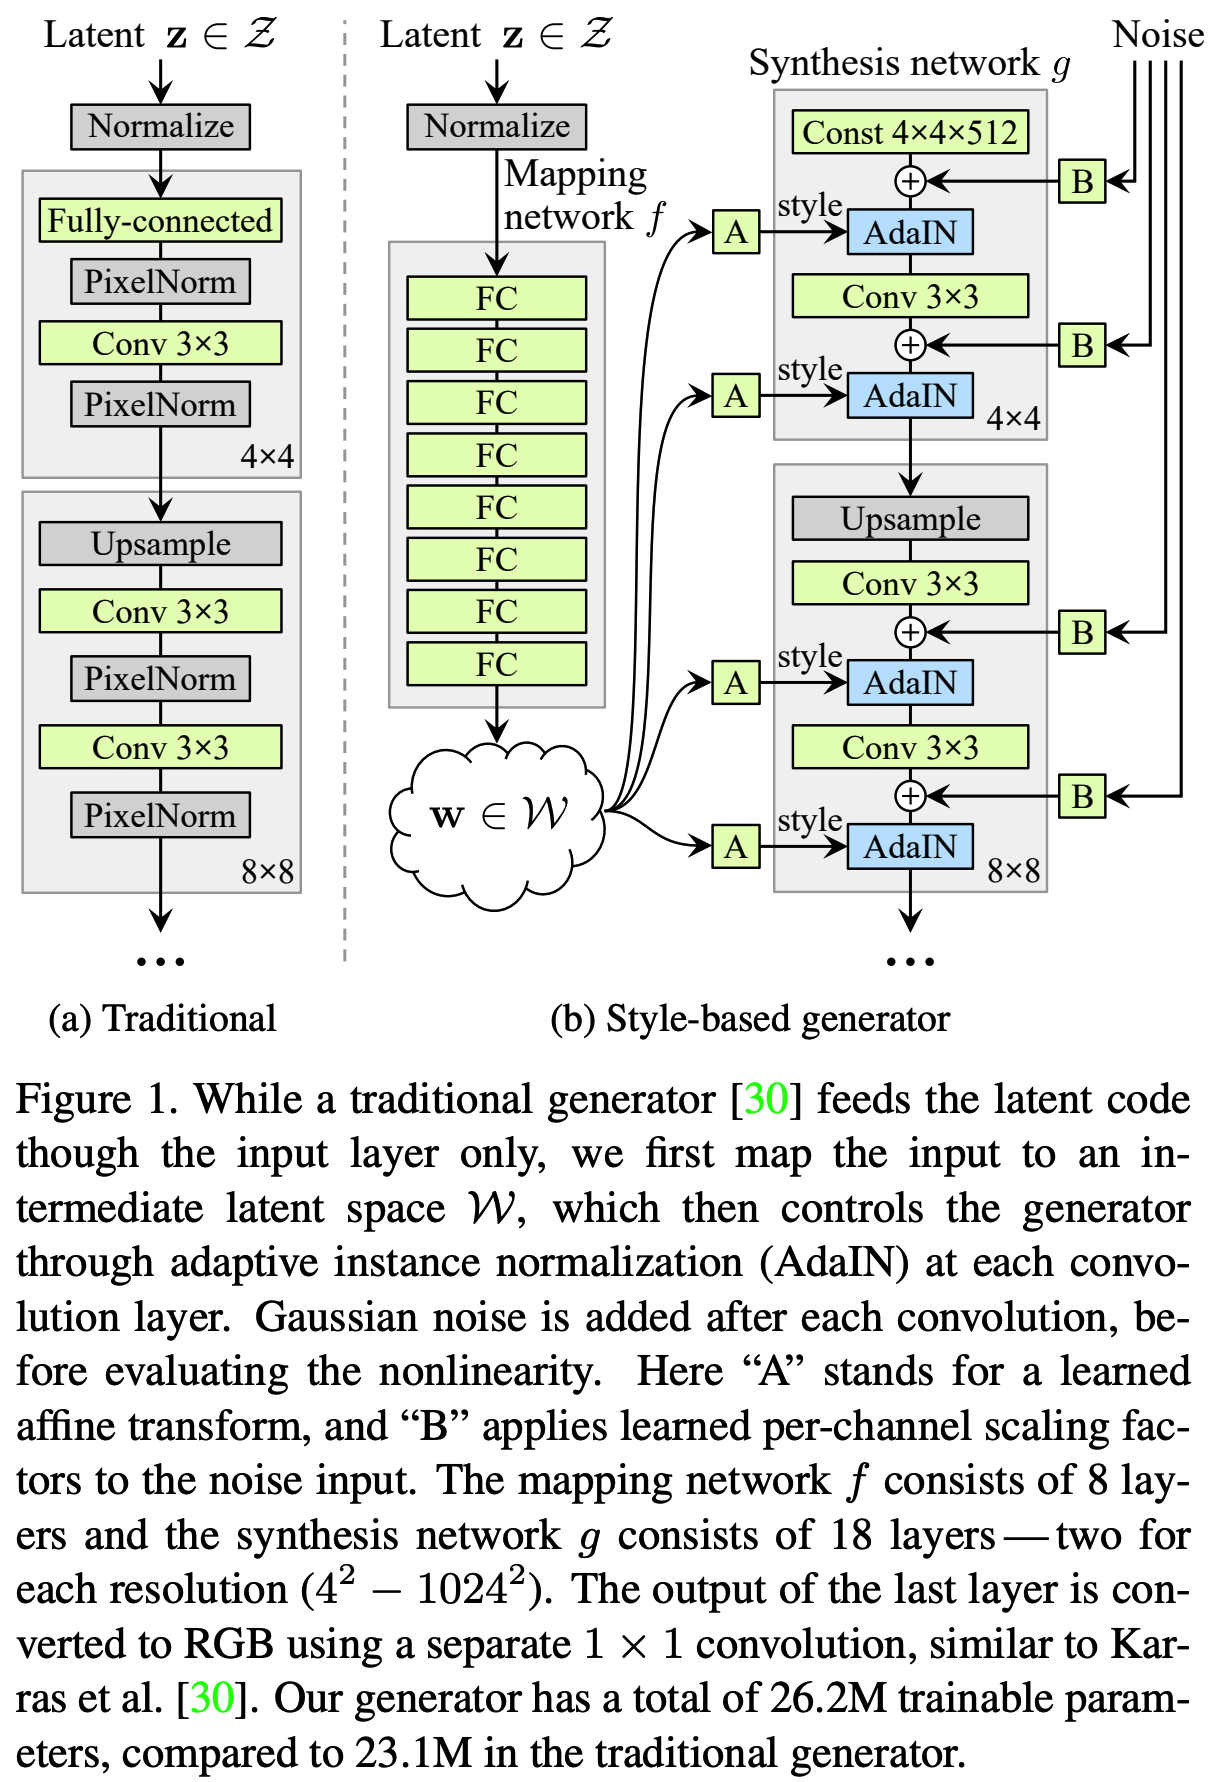 초 간단 논문리뷰| A Style-Based Generator for Generative Adversarial Networks(a.k.a StyleGAN) 매일매일 딥러닝